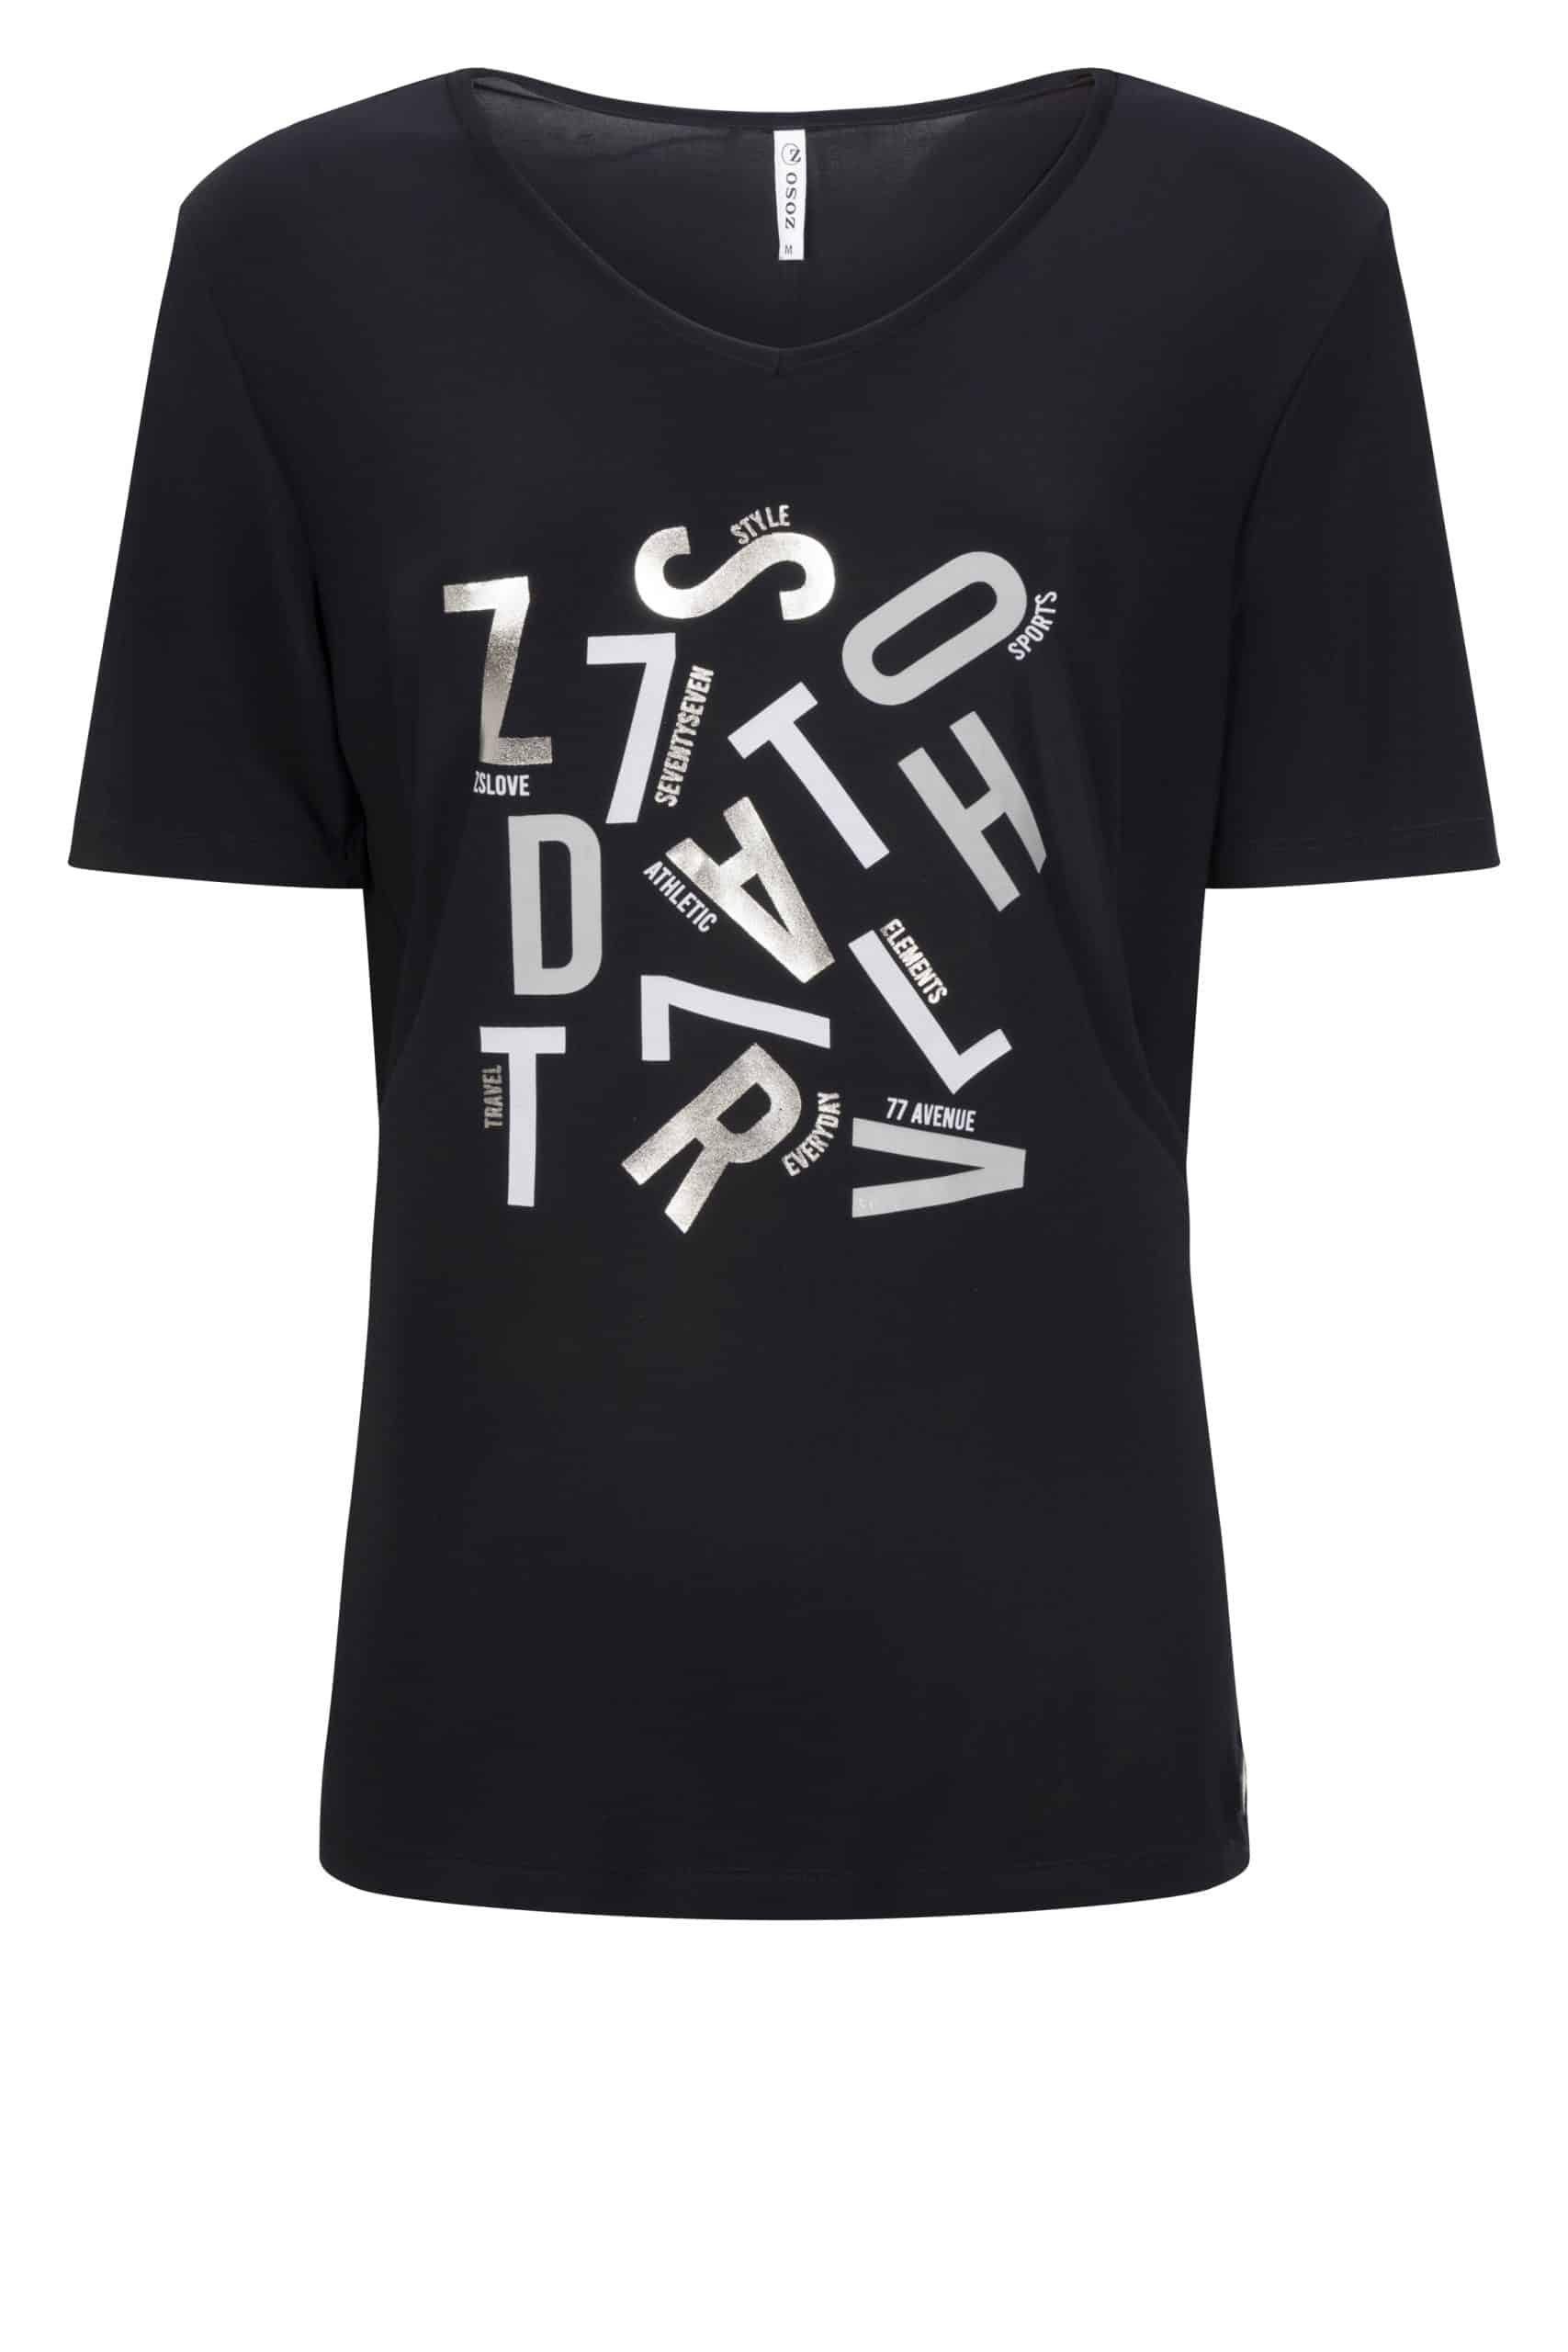 Zoso 222 Brenda Luxury T-Shirt With Artwork Navy